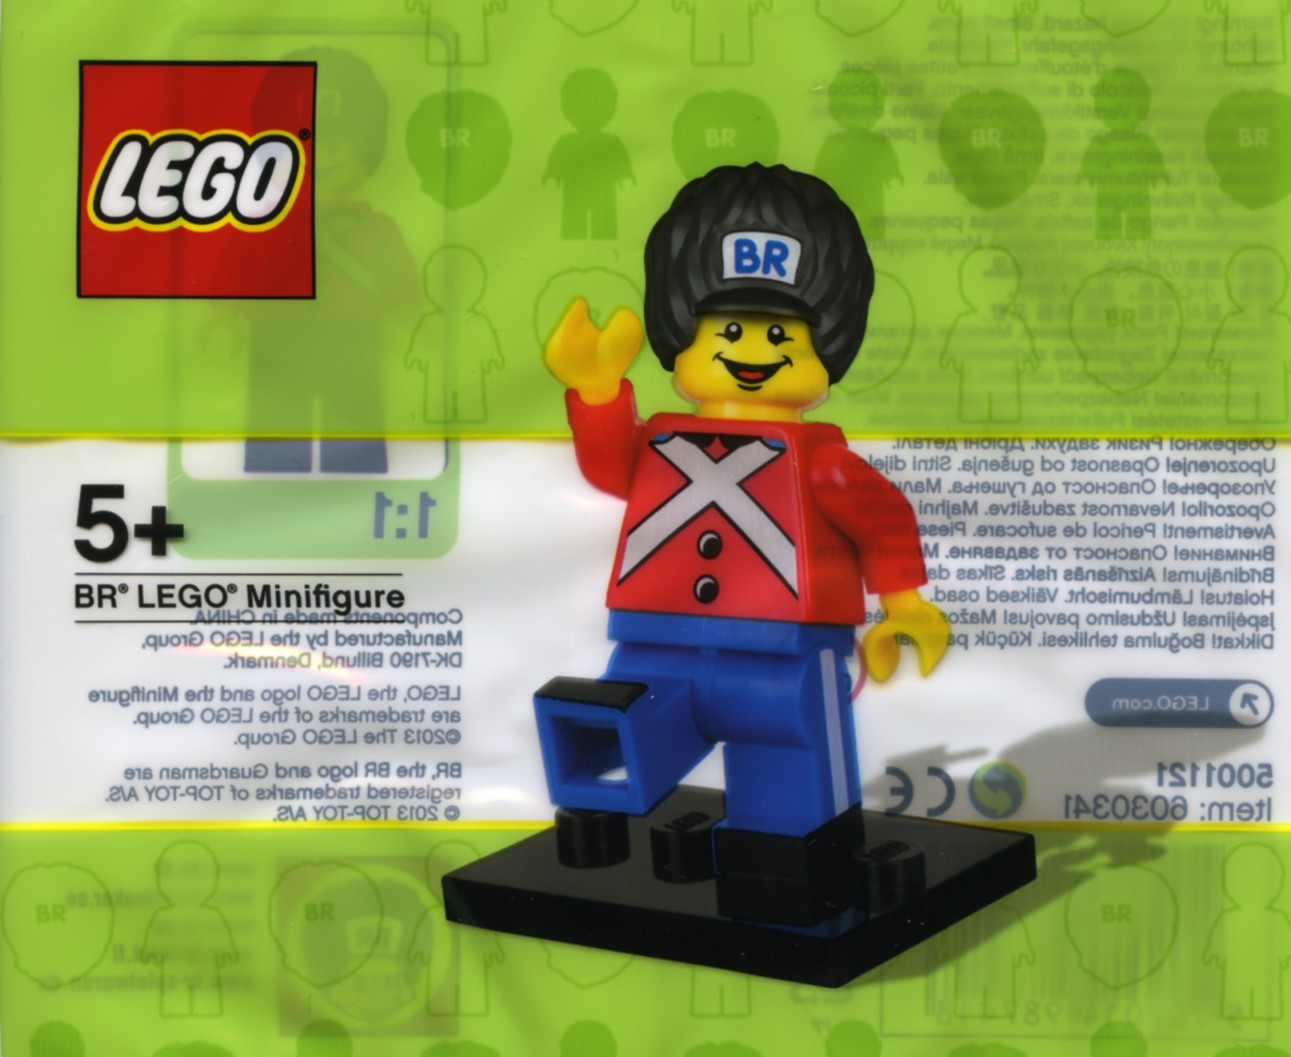 Конструктор Lego 5001121 Коллекционный Гвардеец BR Minifigure 5 деталей